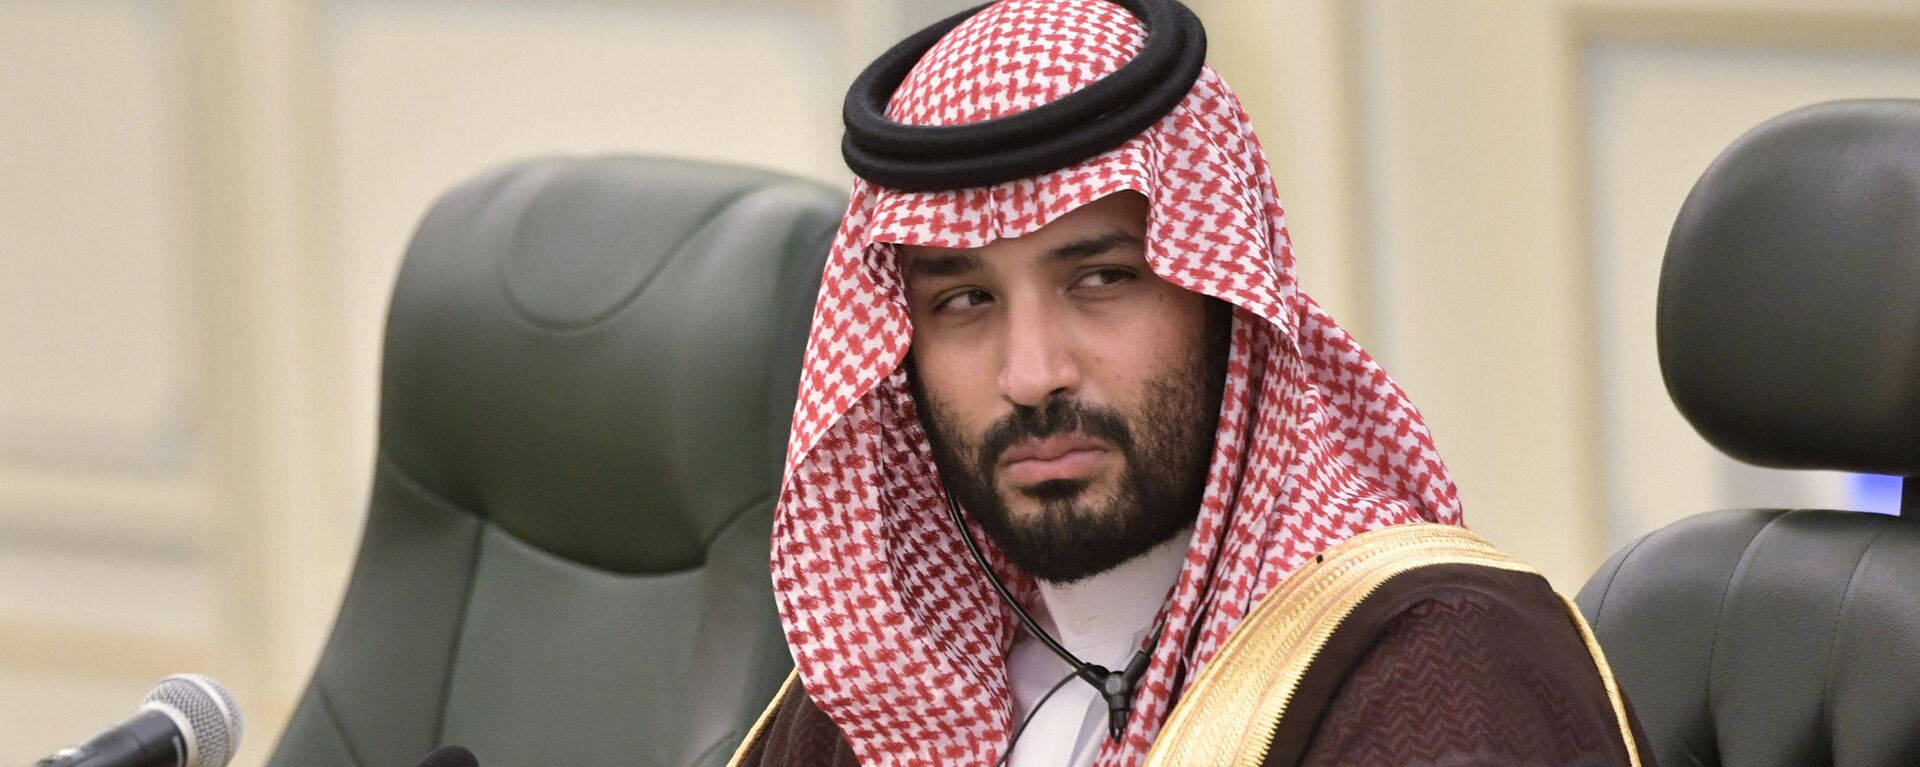 Le prince héritier Mohammed bin Salman assiste à une réunion avec le président russe Vladimir Poutine au palais royal saoudien à Riyad, en Arabie Saoudite. - Sputnik Afrique, 1920, 01.03.2021